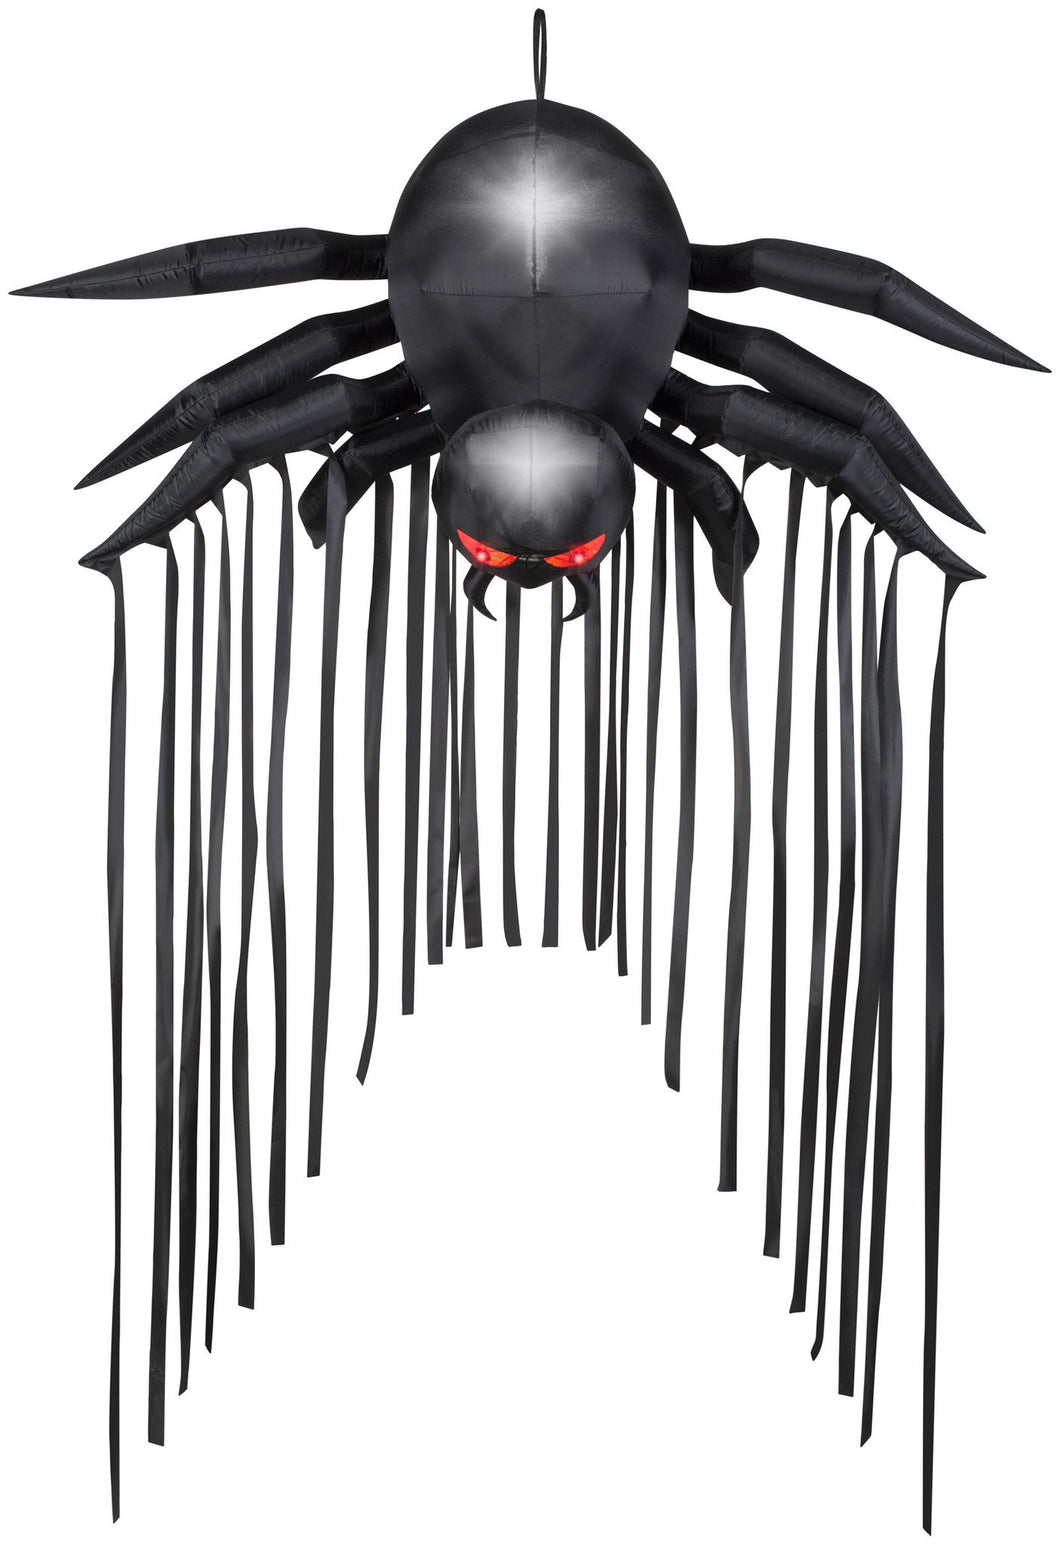 6.5' Airblown Door Archway Black Spider Halloween Inflatable